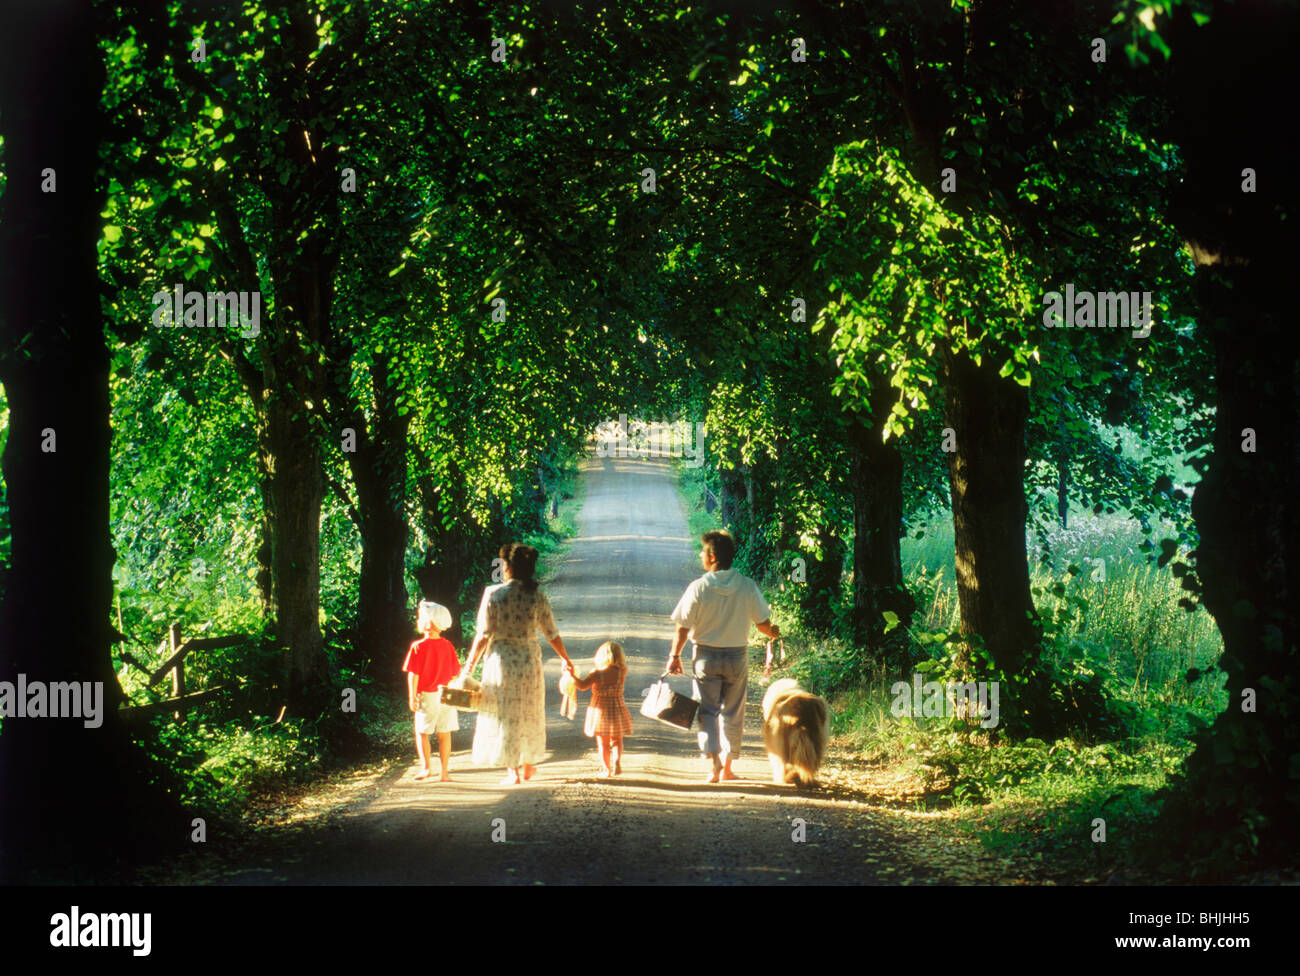 Famille de 5 personnes avec chien en route de campagne bordée d'arbres en Suède Banque D'Images